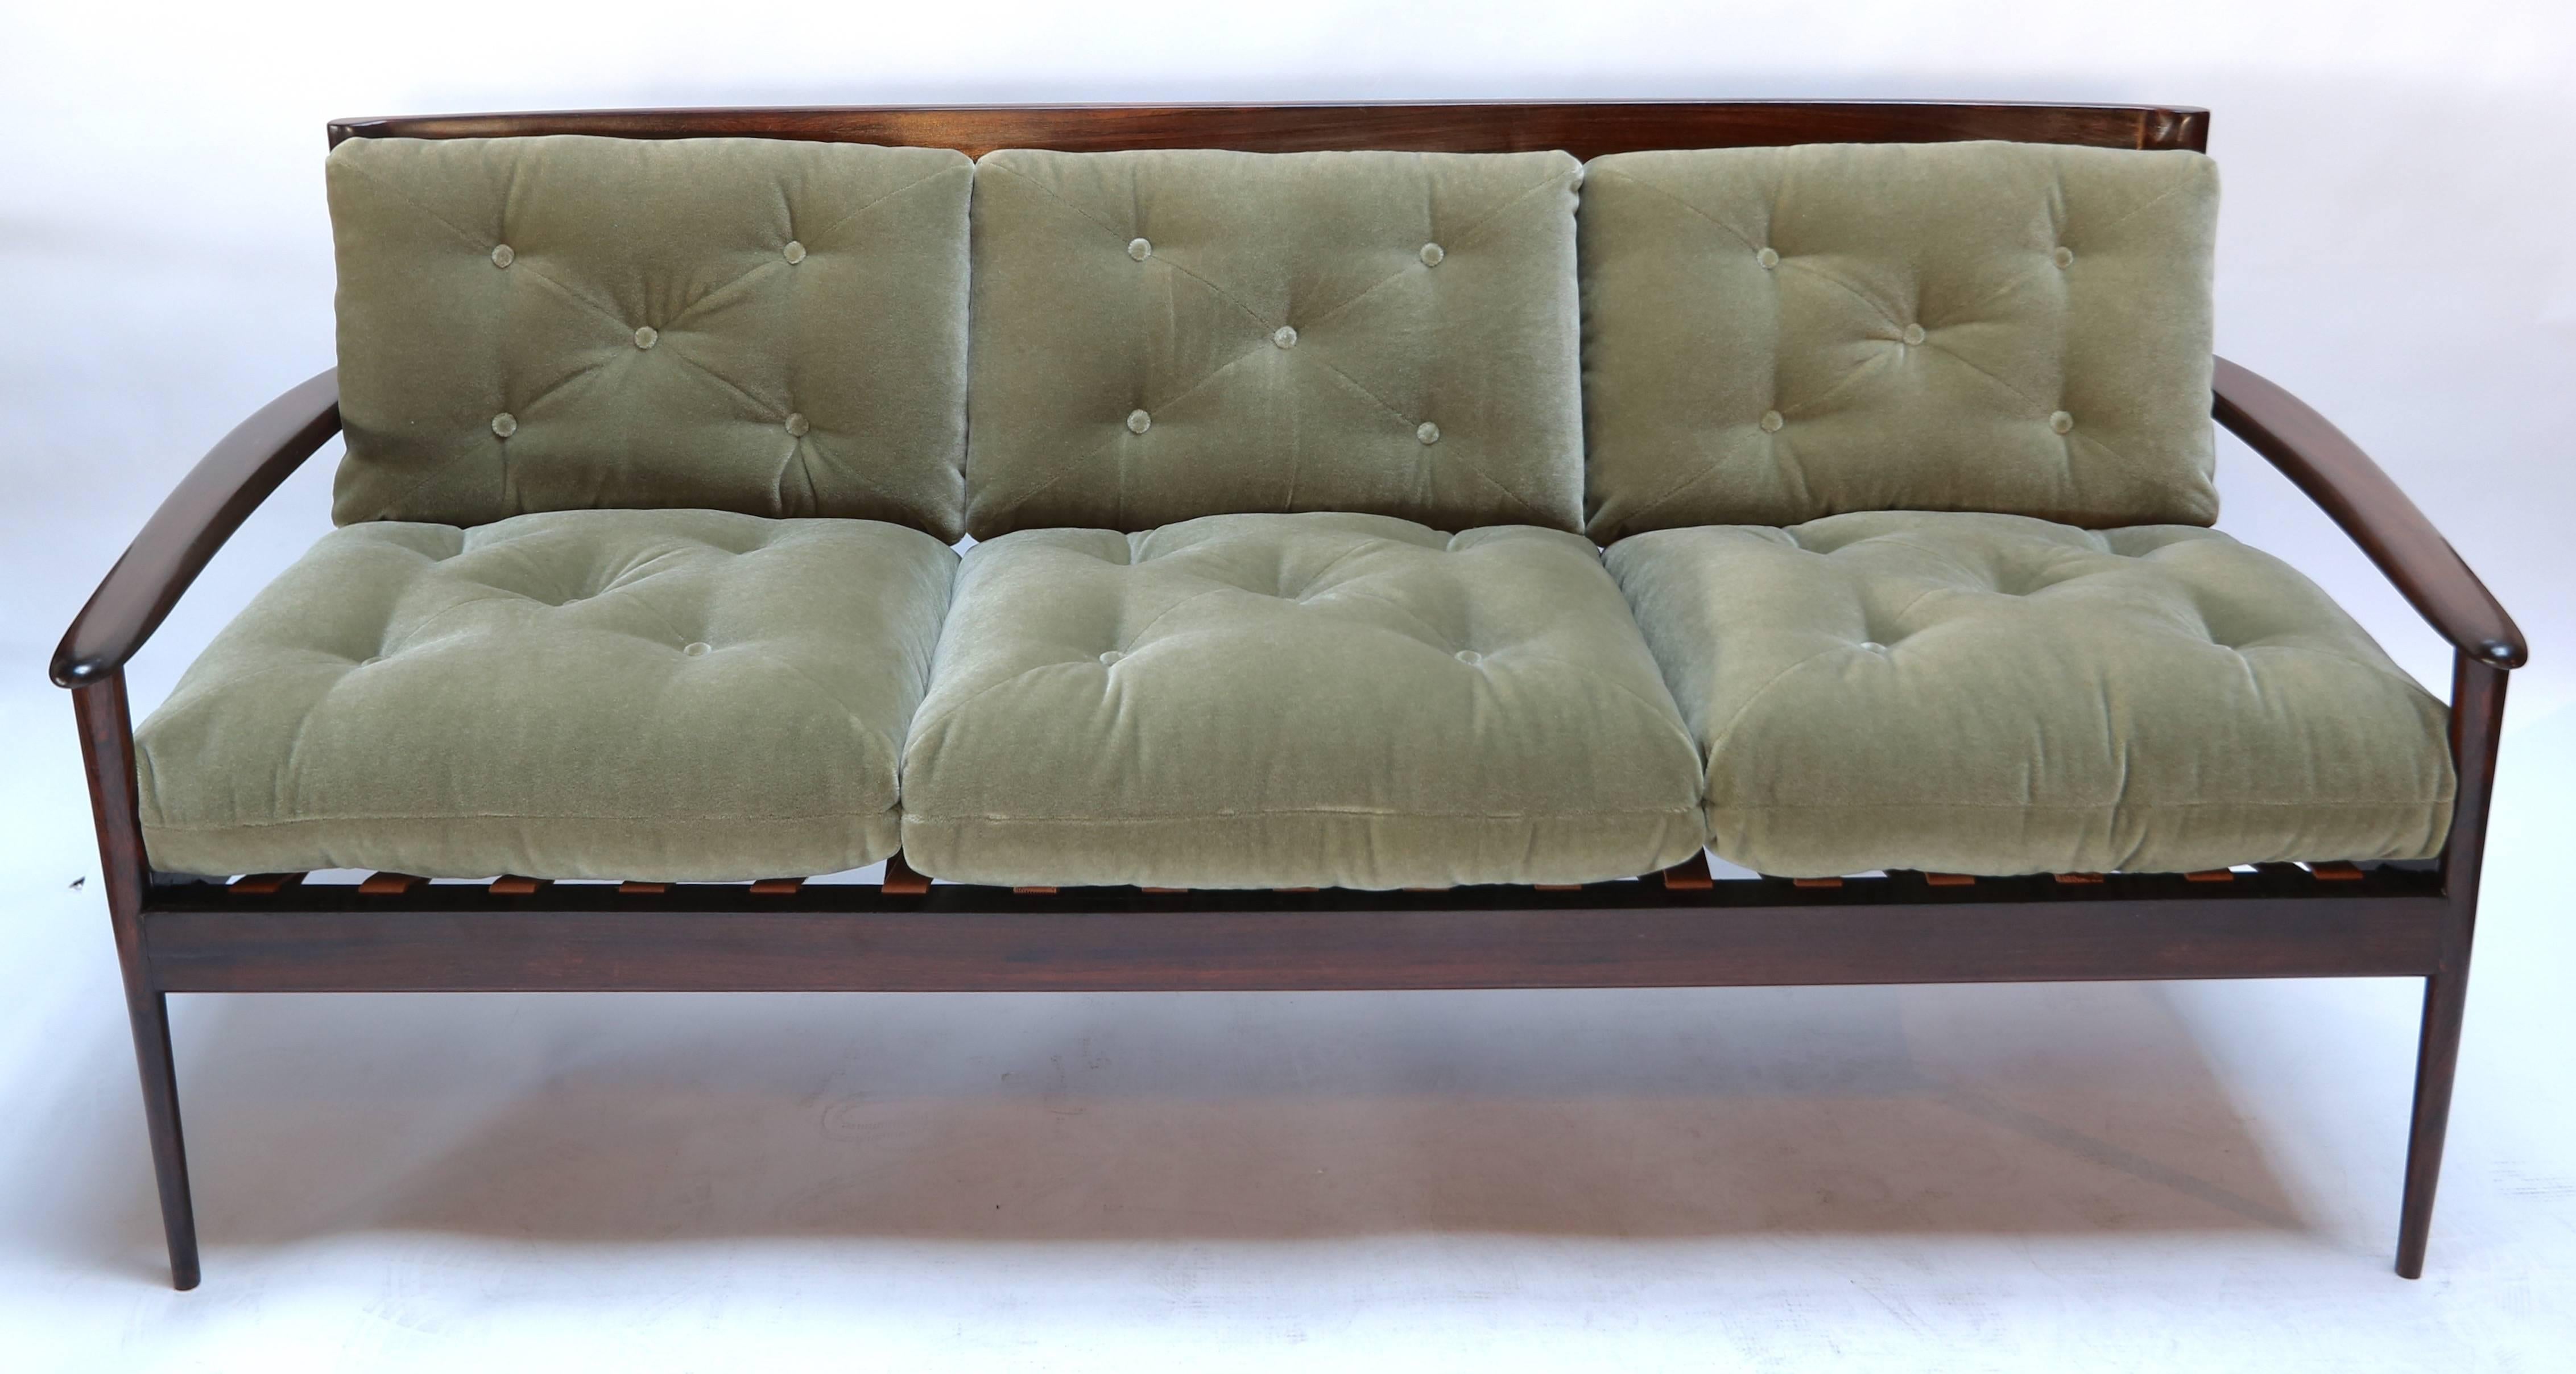 Dreisitziges Sofa aus brasilianischem Jacaranda-Holz der 1960er Jahre von Rino Levi's, gepolstert mit grünem Mohair.

Ein Paar passender Sessel (LU81754799563) ist ebenfalls erhältlich.